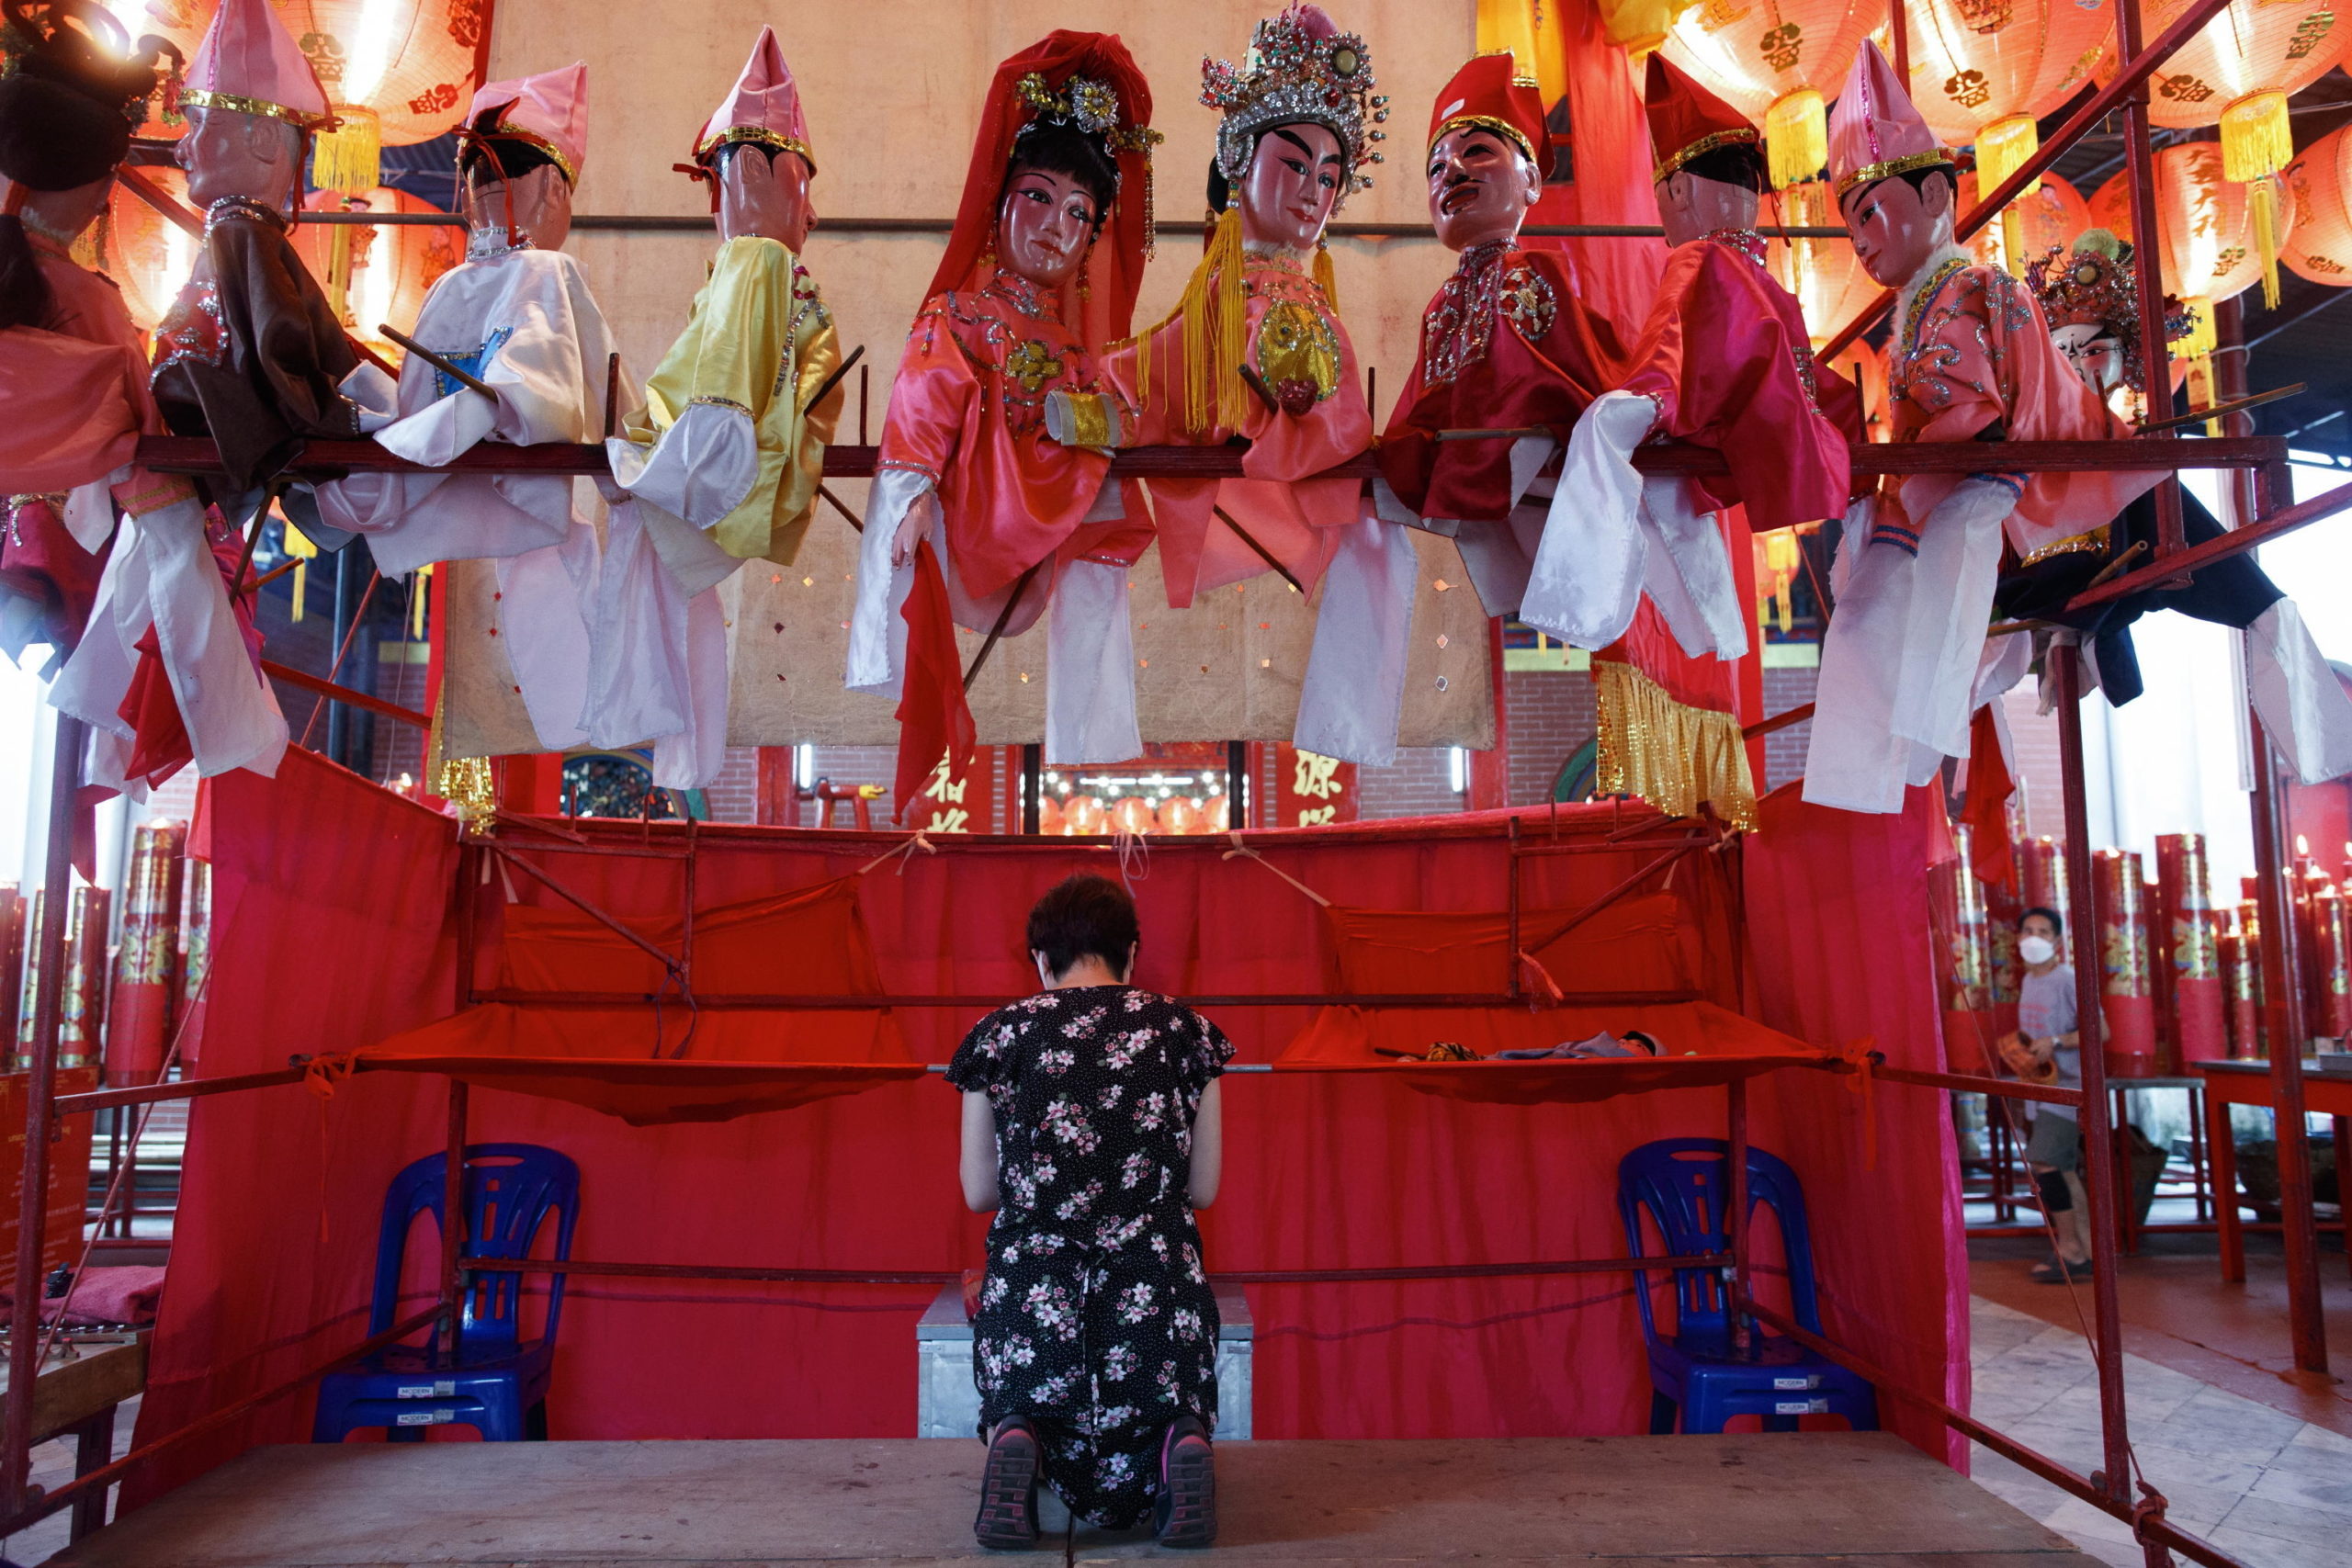 Un membro della compagnia offre preghiere alla dea cinese del cielo e del mare